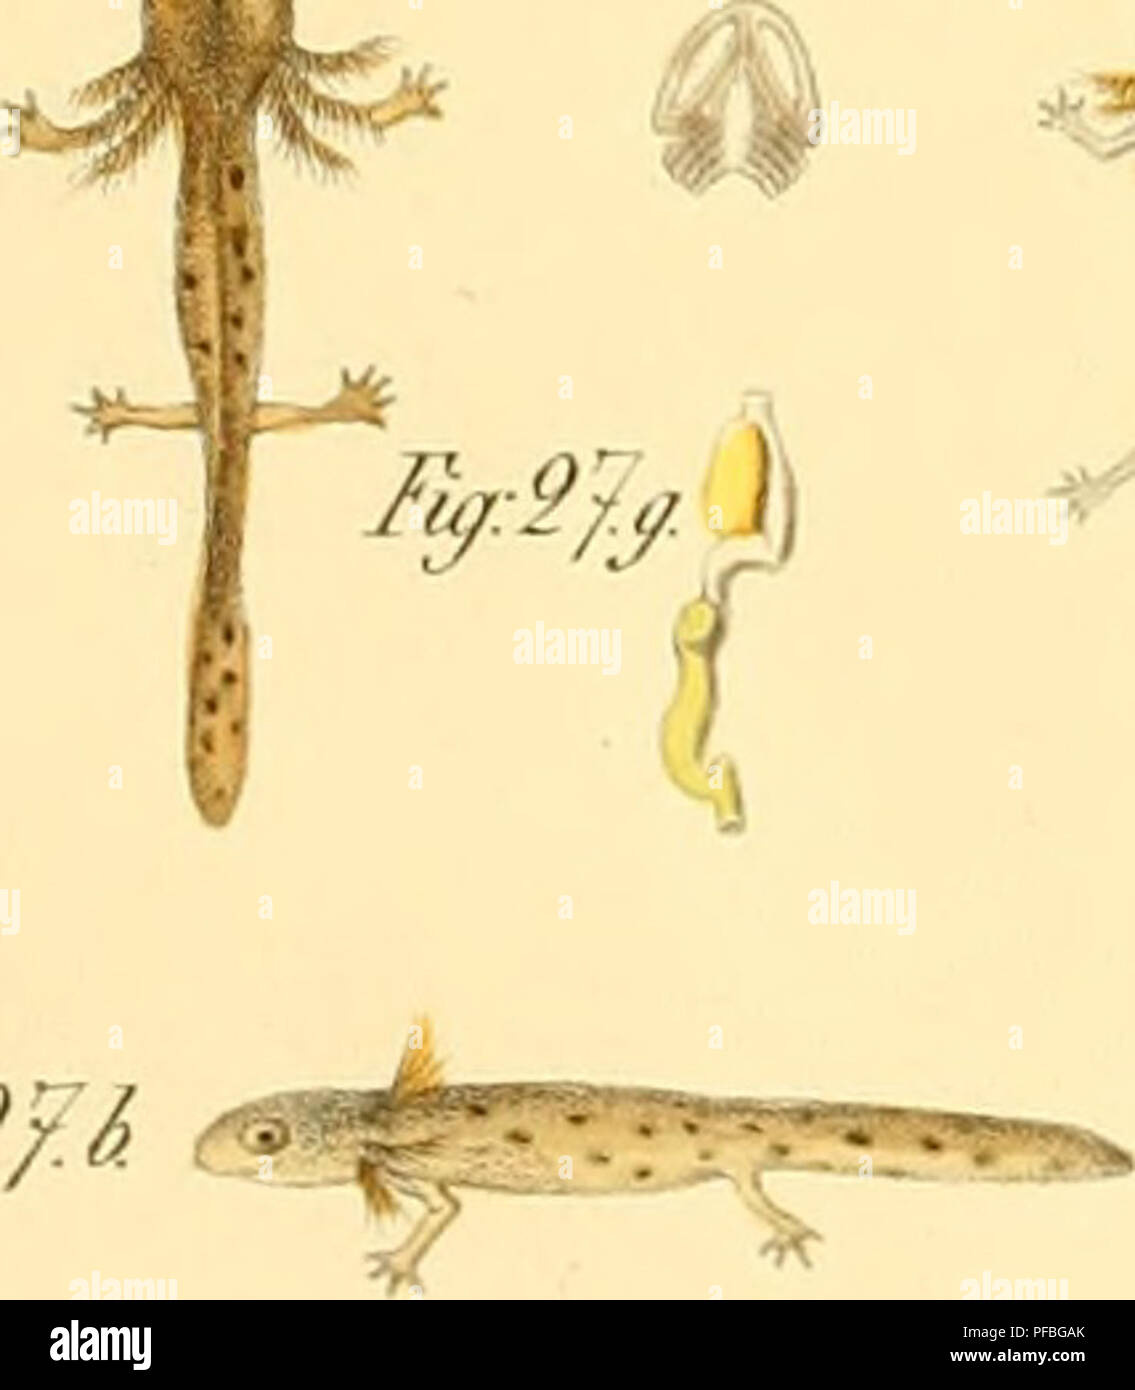 . De salamandrae terrestris vita, evolutione, formatione tractatus. Les salamandres ; l'embryologie -- les amphibiens. /Fjr :/3. Gratuit^^ M II :/J. //"^ :// ?'. Fuj :/'/. fij :/^.a. l'af :/8./&gt ;. ^ Ji :/Q. f,g:0() /}^ ; 0/}^J Q9 Fi^ :£J. . D'ACHÈVEMENT-S-/. F^^Ja. r{f9J/&gt ; J-y. !/da. Fu/:9d./&gt ;. FyMr. L'af.Mr/. Fjr.9JC. Gratuit^:2J(l. Fu/:96.e. 5 ^^ ^ ) r j:i ji -^ ^^ ^ fe JE PX^artns primit ! !' (I mm Feh" Fardis primi/.c dlff.JX m lamtar : tig.^. o Une Fiy:97.a.^ Fiy:2J. .^^ Fi :£/:c. O.^^V-/"^- F,y:2y.i. Gratuit^:m. M JV^ni. Gratuit^:M/. ^o^^^»^- J F:2/.F. Veuillez noter que ces images sont extraites de la page numérisée des images qui peuvent avoir été Banque D'Images